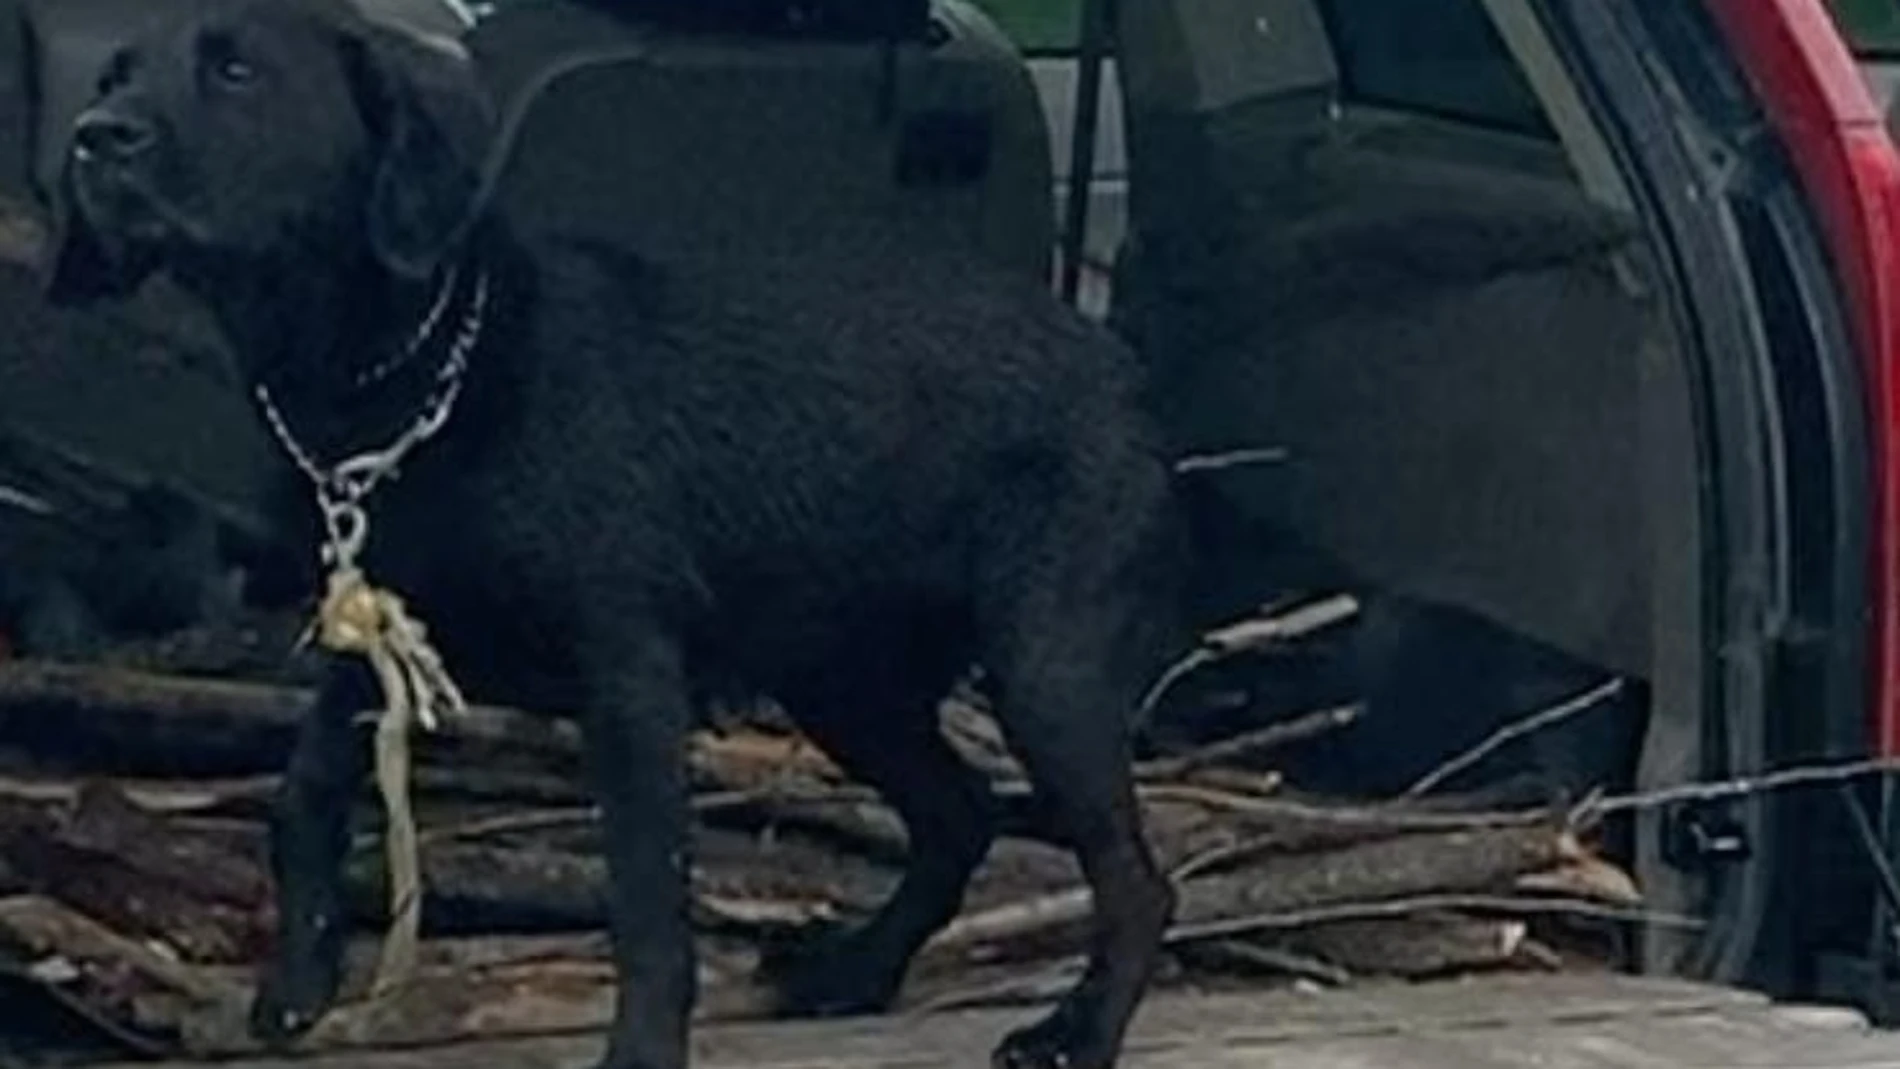 Labradora que las organizaciones animalistas quieren quitarle al dueño que arrastró y mató a su perro / Protectora Las Brujas de El Molar